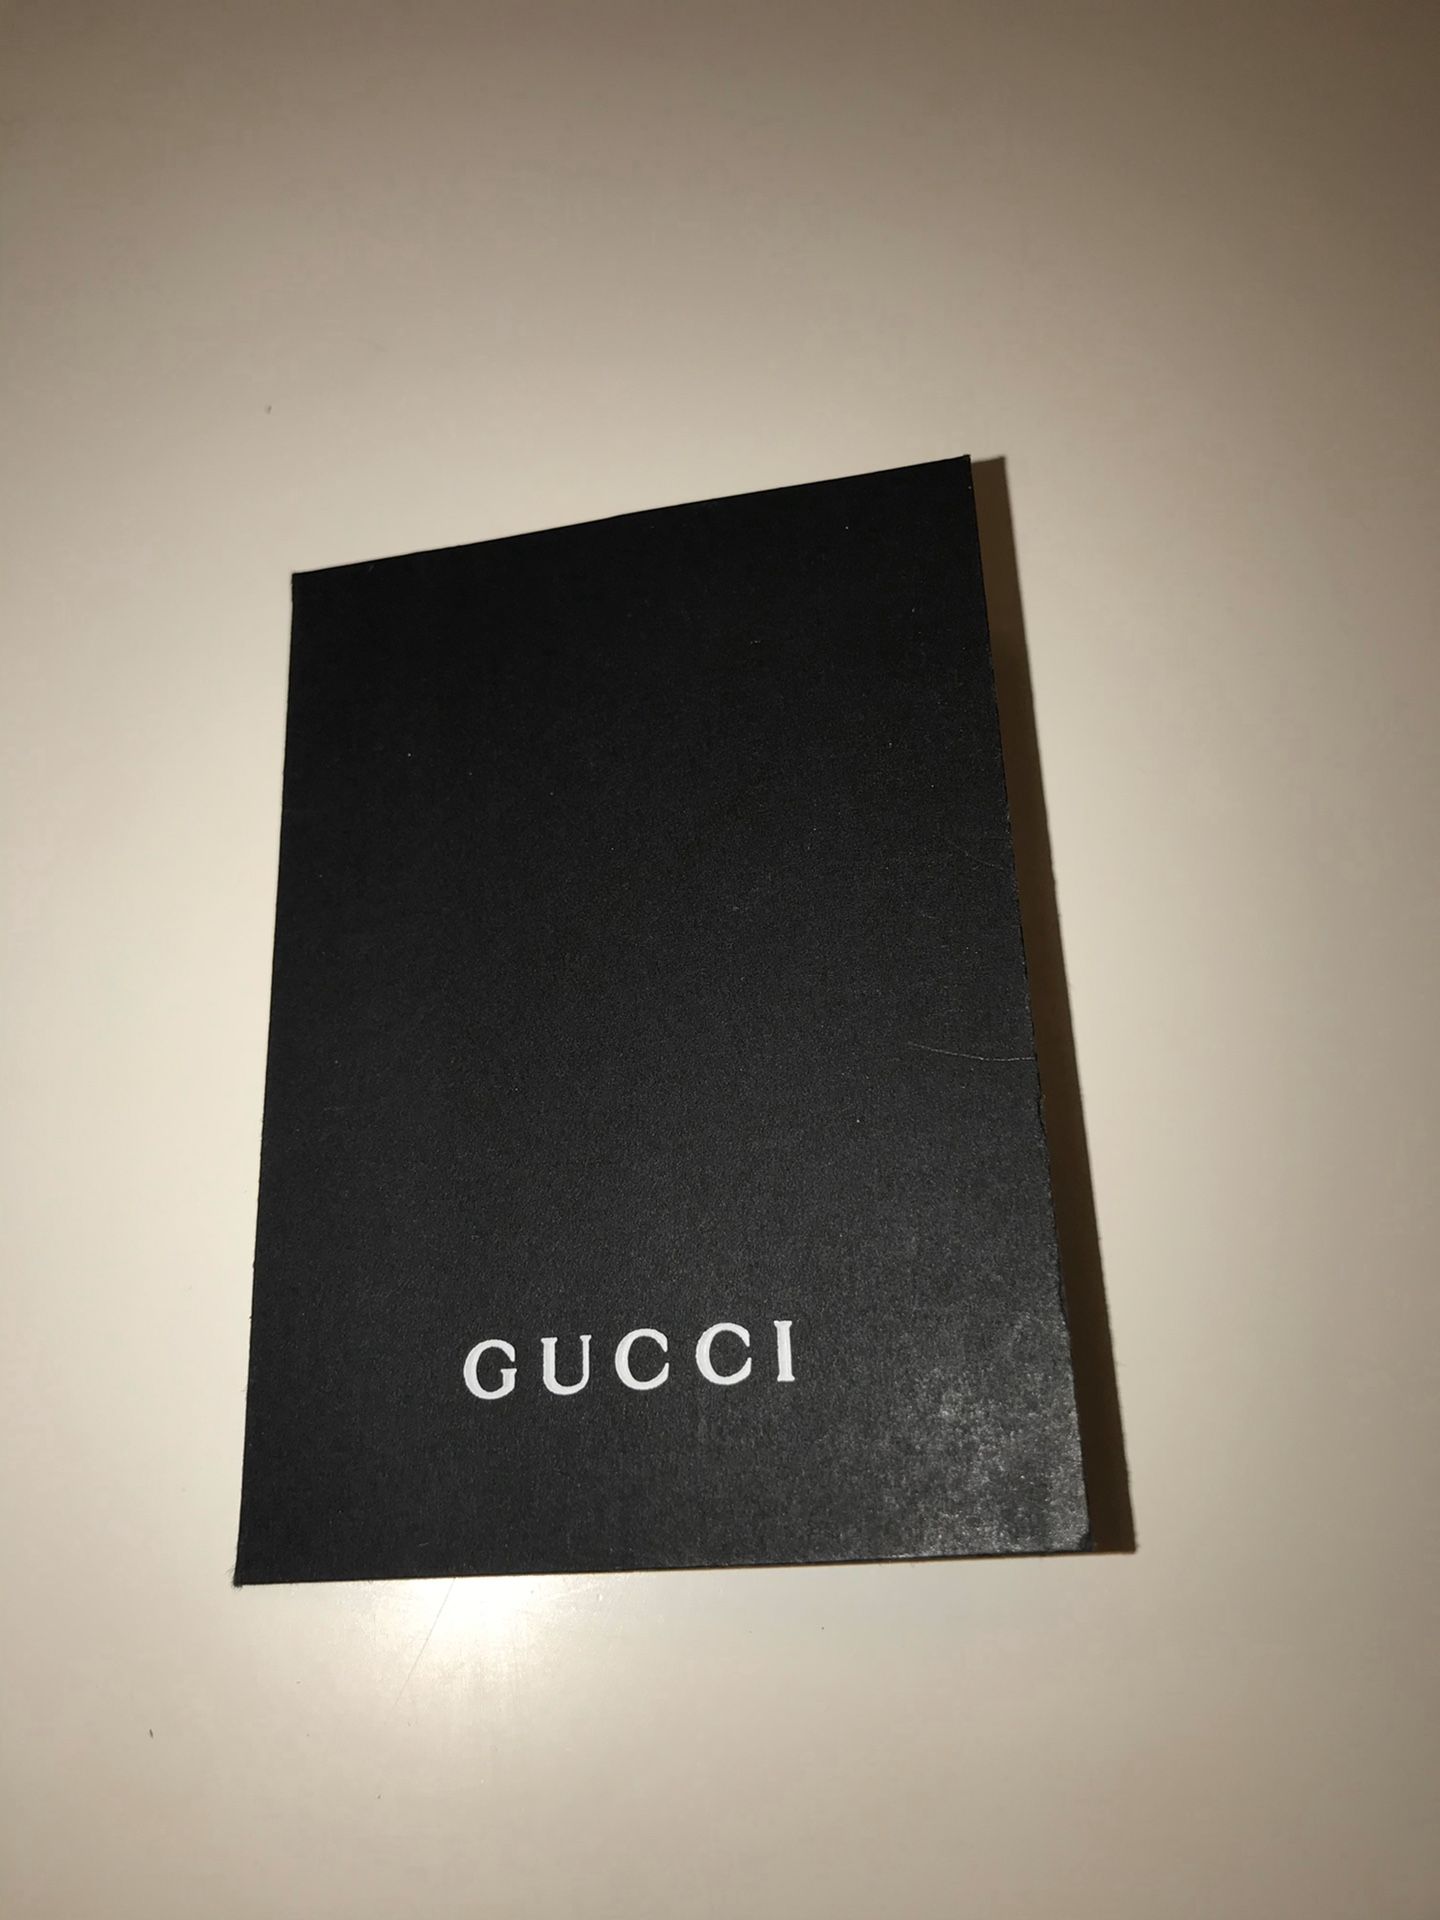 Gucci Tote Bag Brand New